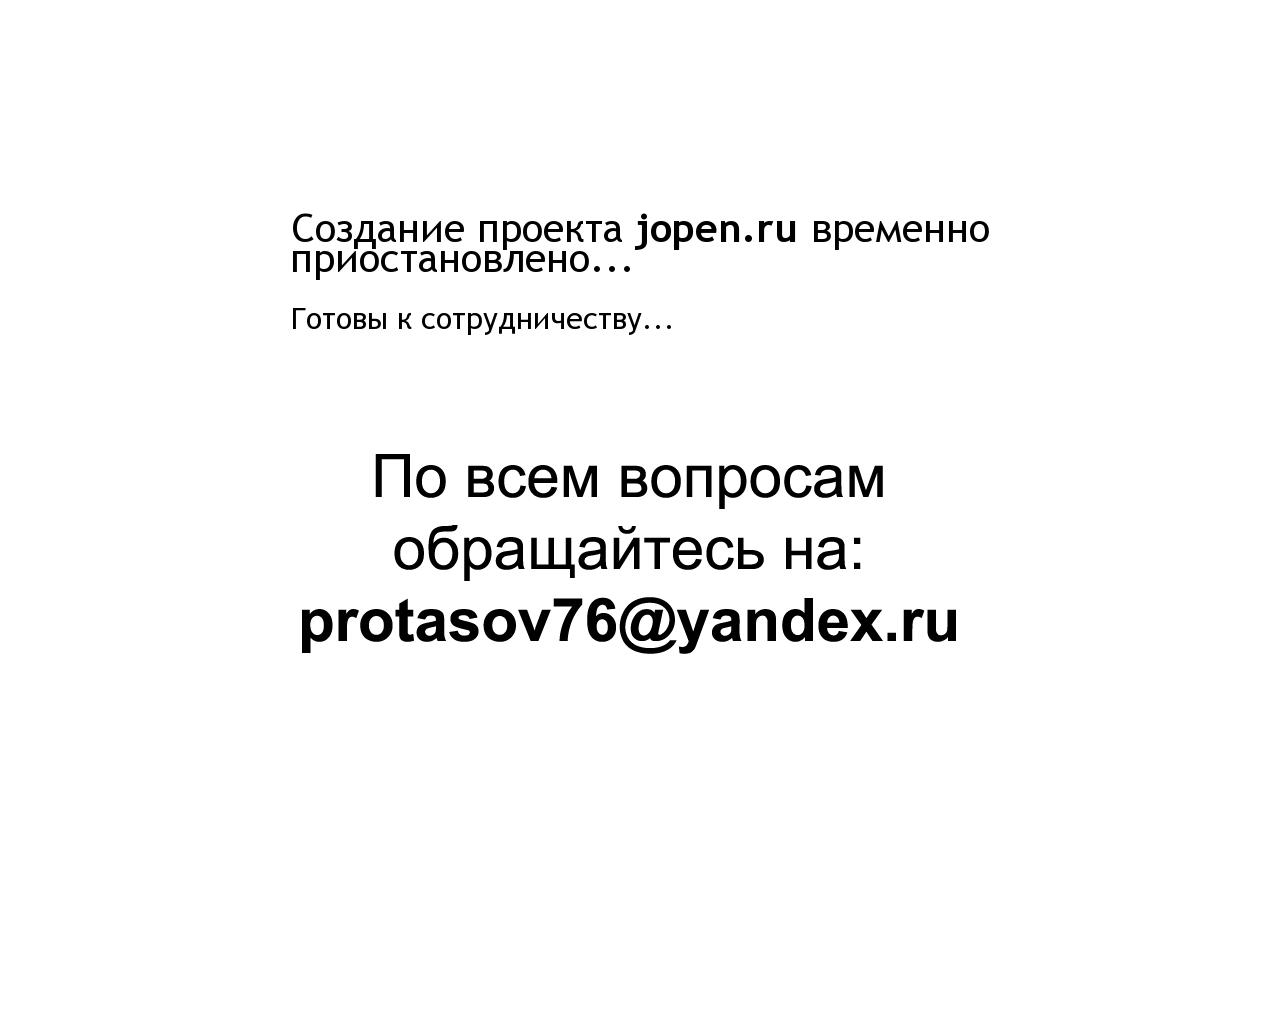 Изображение сайта jopen.ru в разрешении 1280x1024